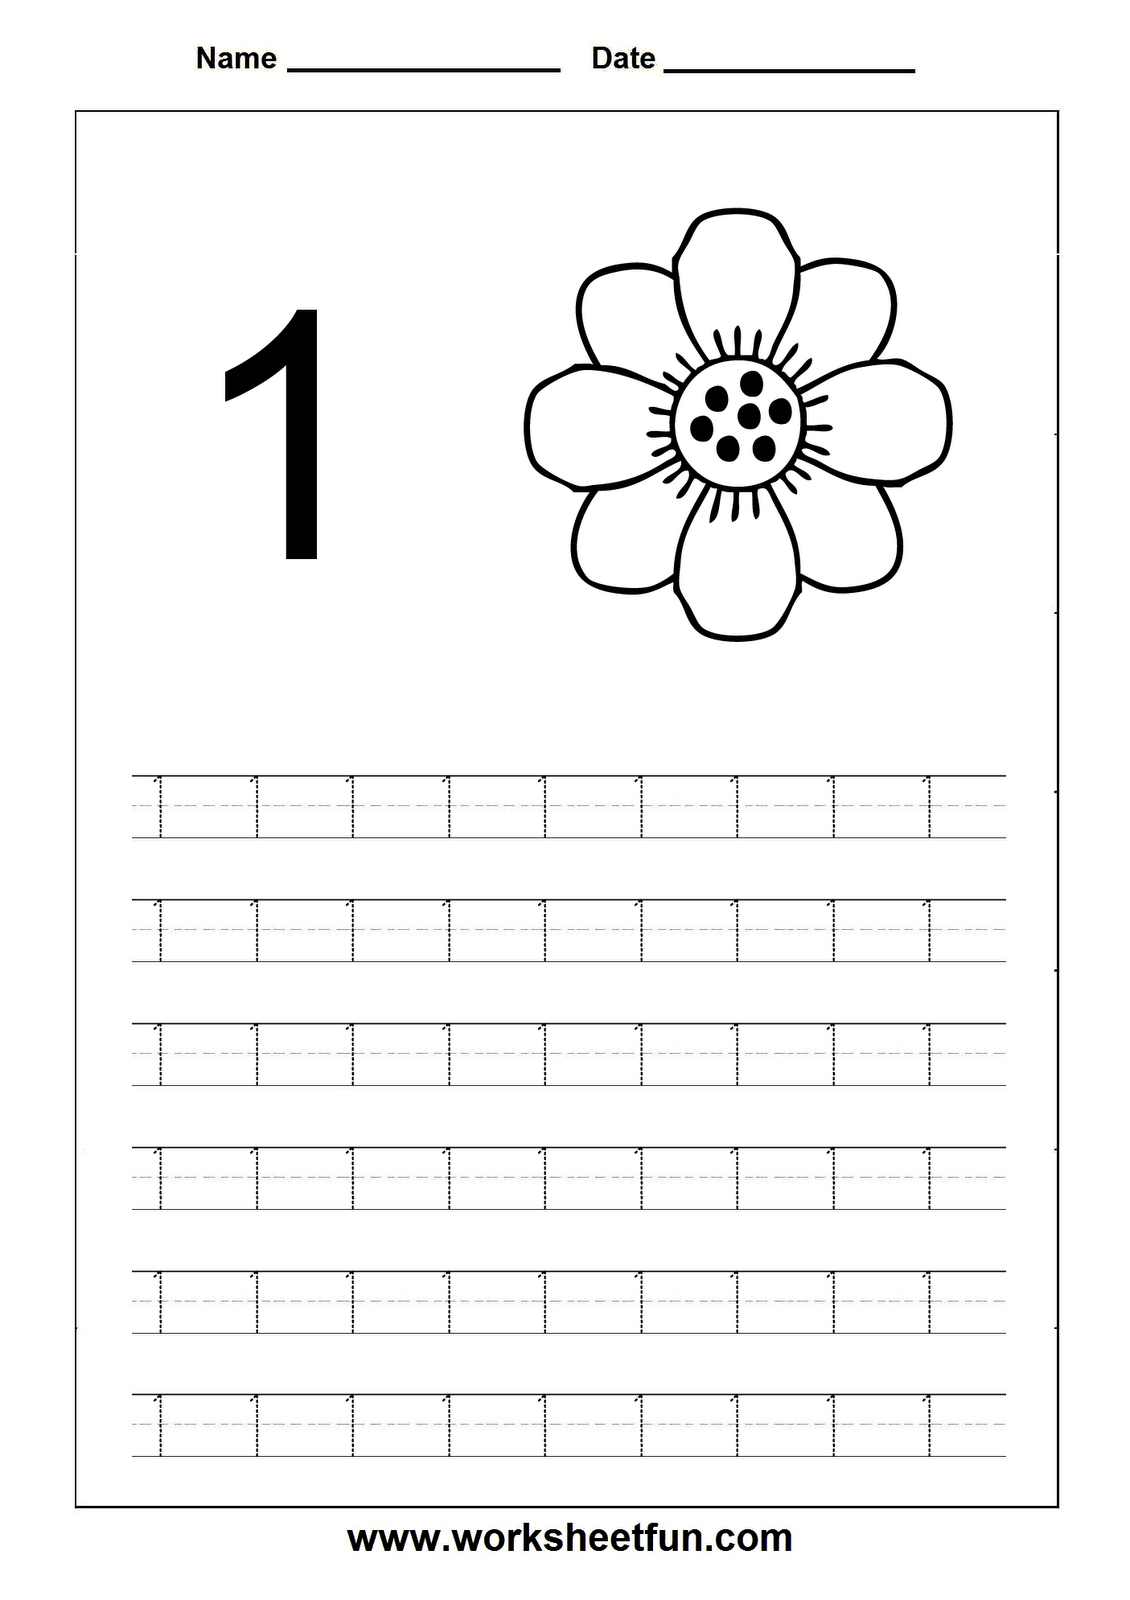 curved-lines-worksheet-26-alphabet-worksheets-preschool-alphabet